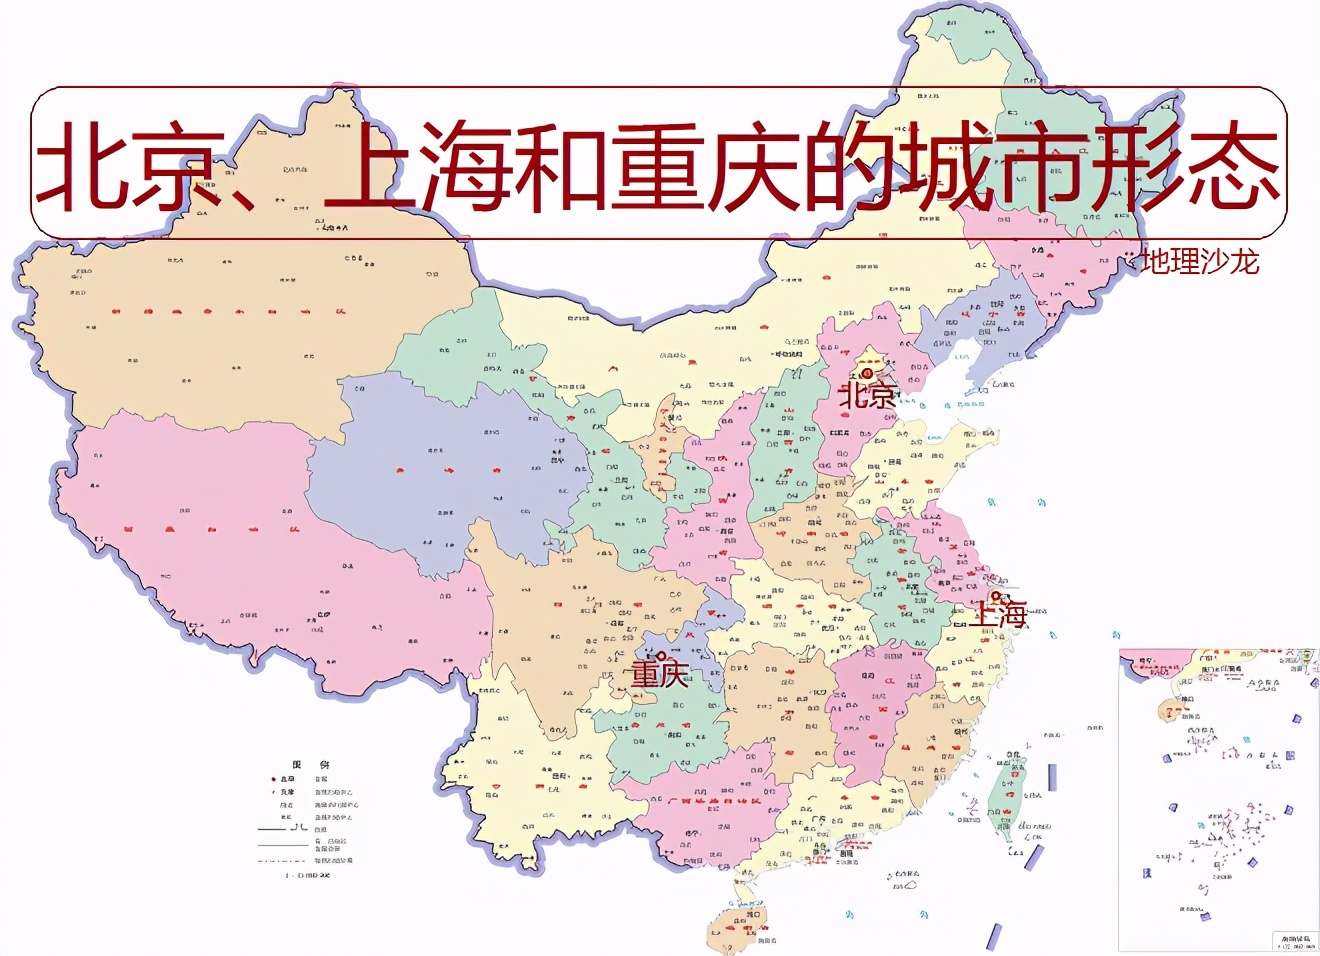 上海在中国地图的位置，上海在中国地图的位置的城市动态？